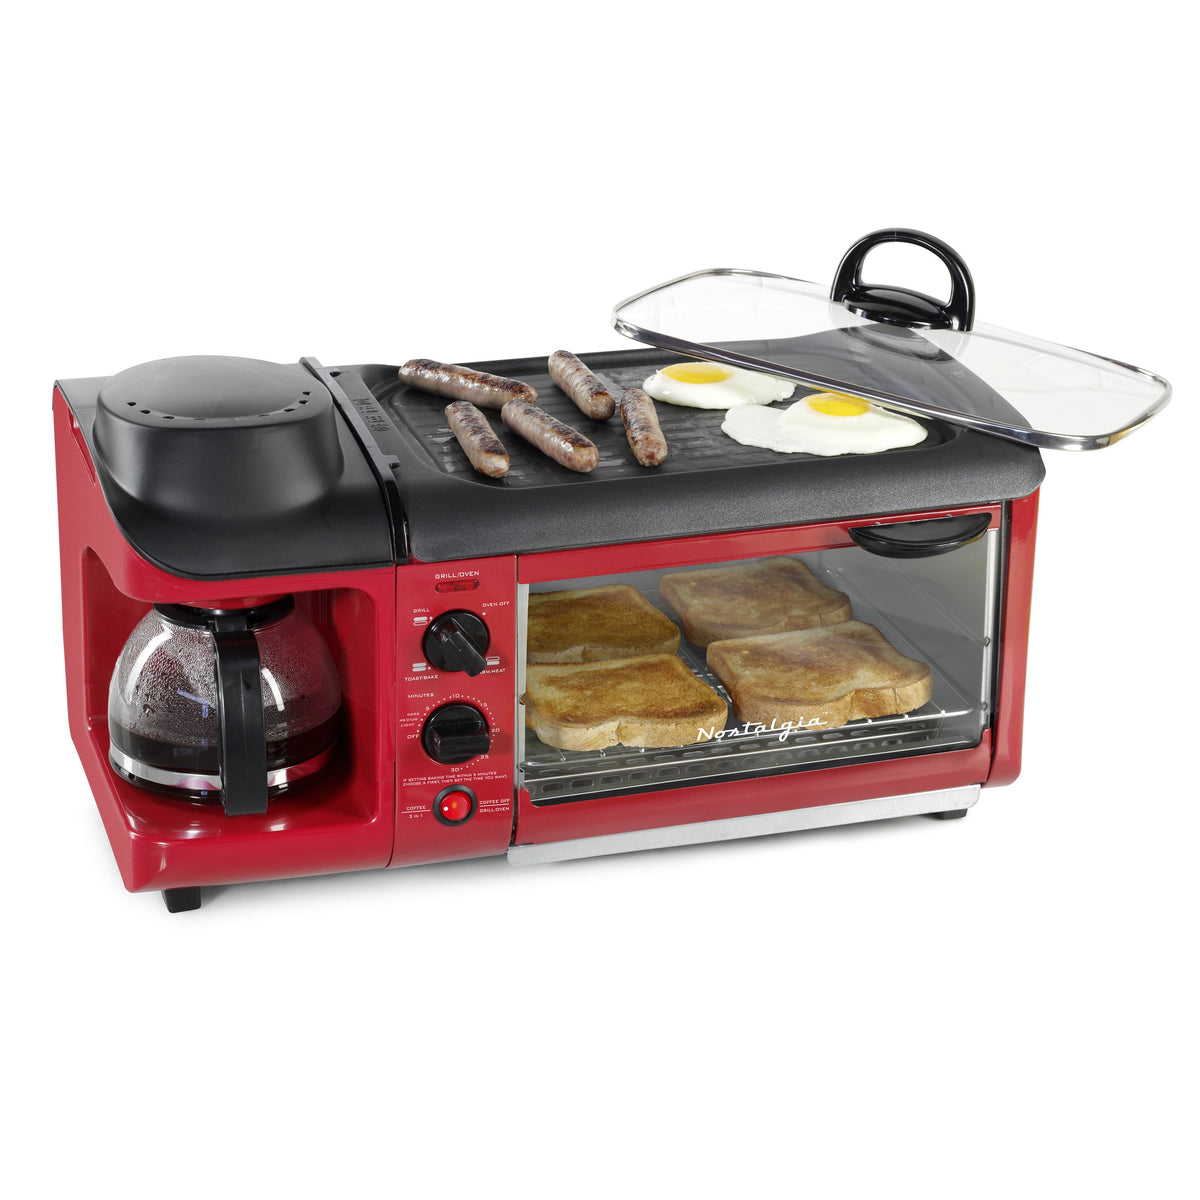 Buy 3-in-1 Complete Breakfast Machine Combination - Oven, Frying